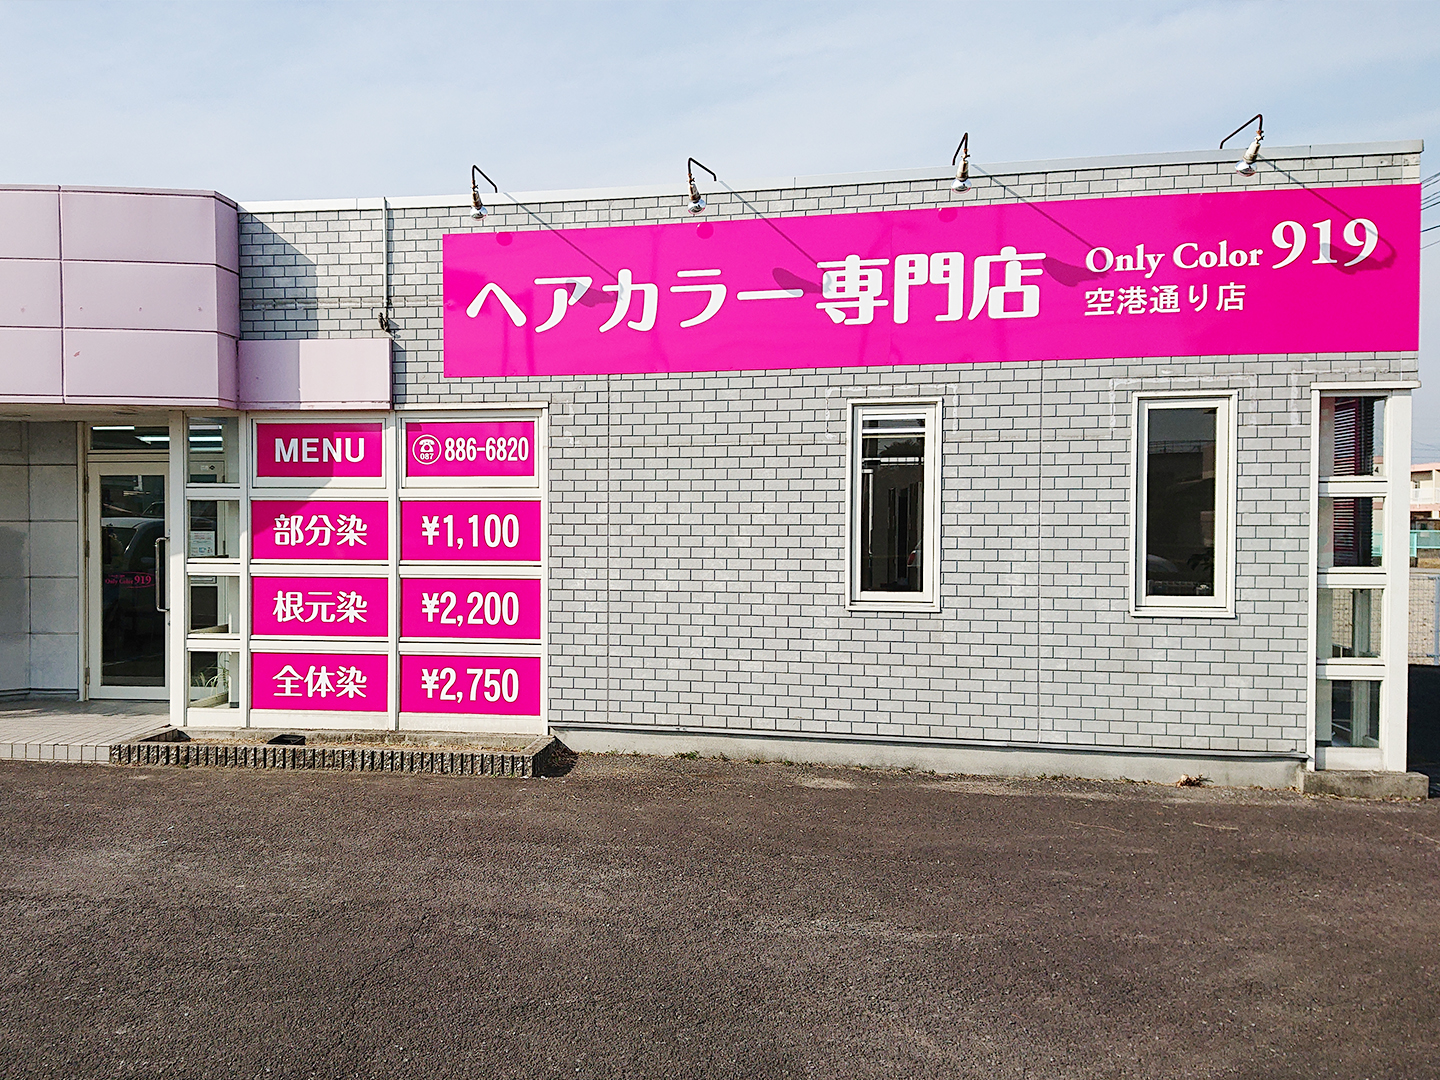 高知のヘアカラー専門店-Only Color 919